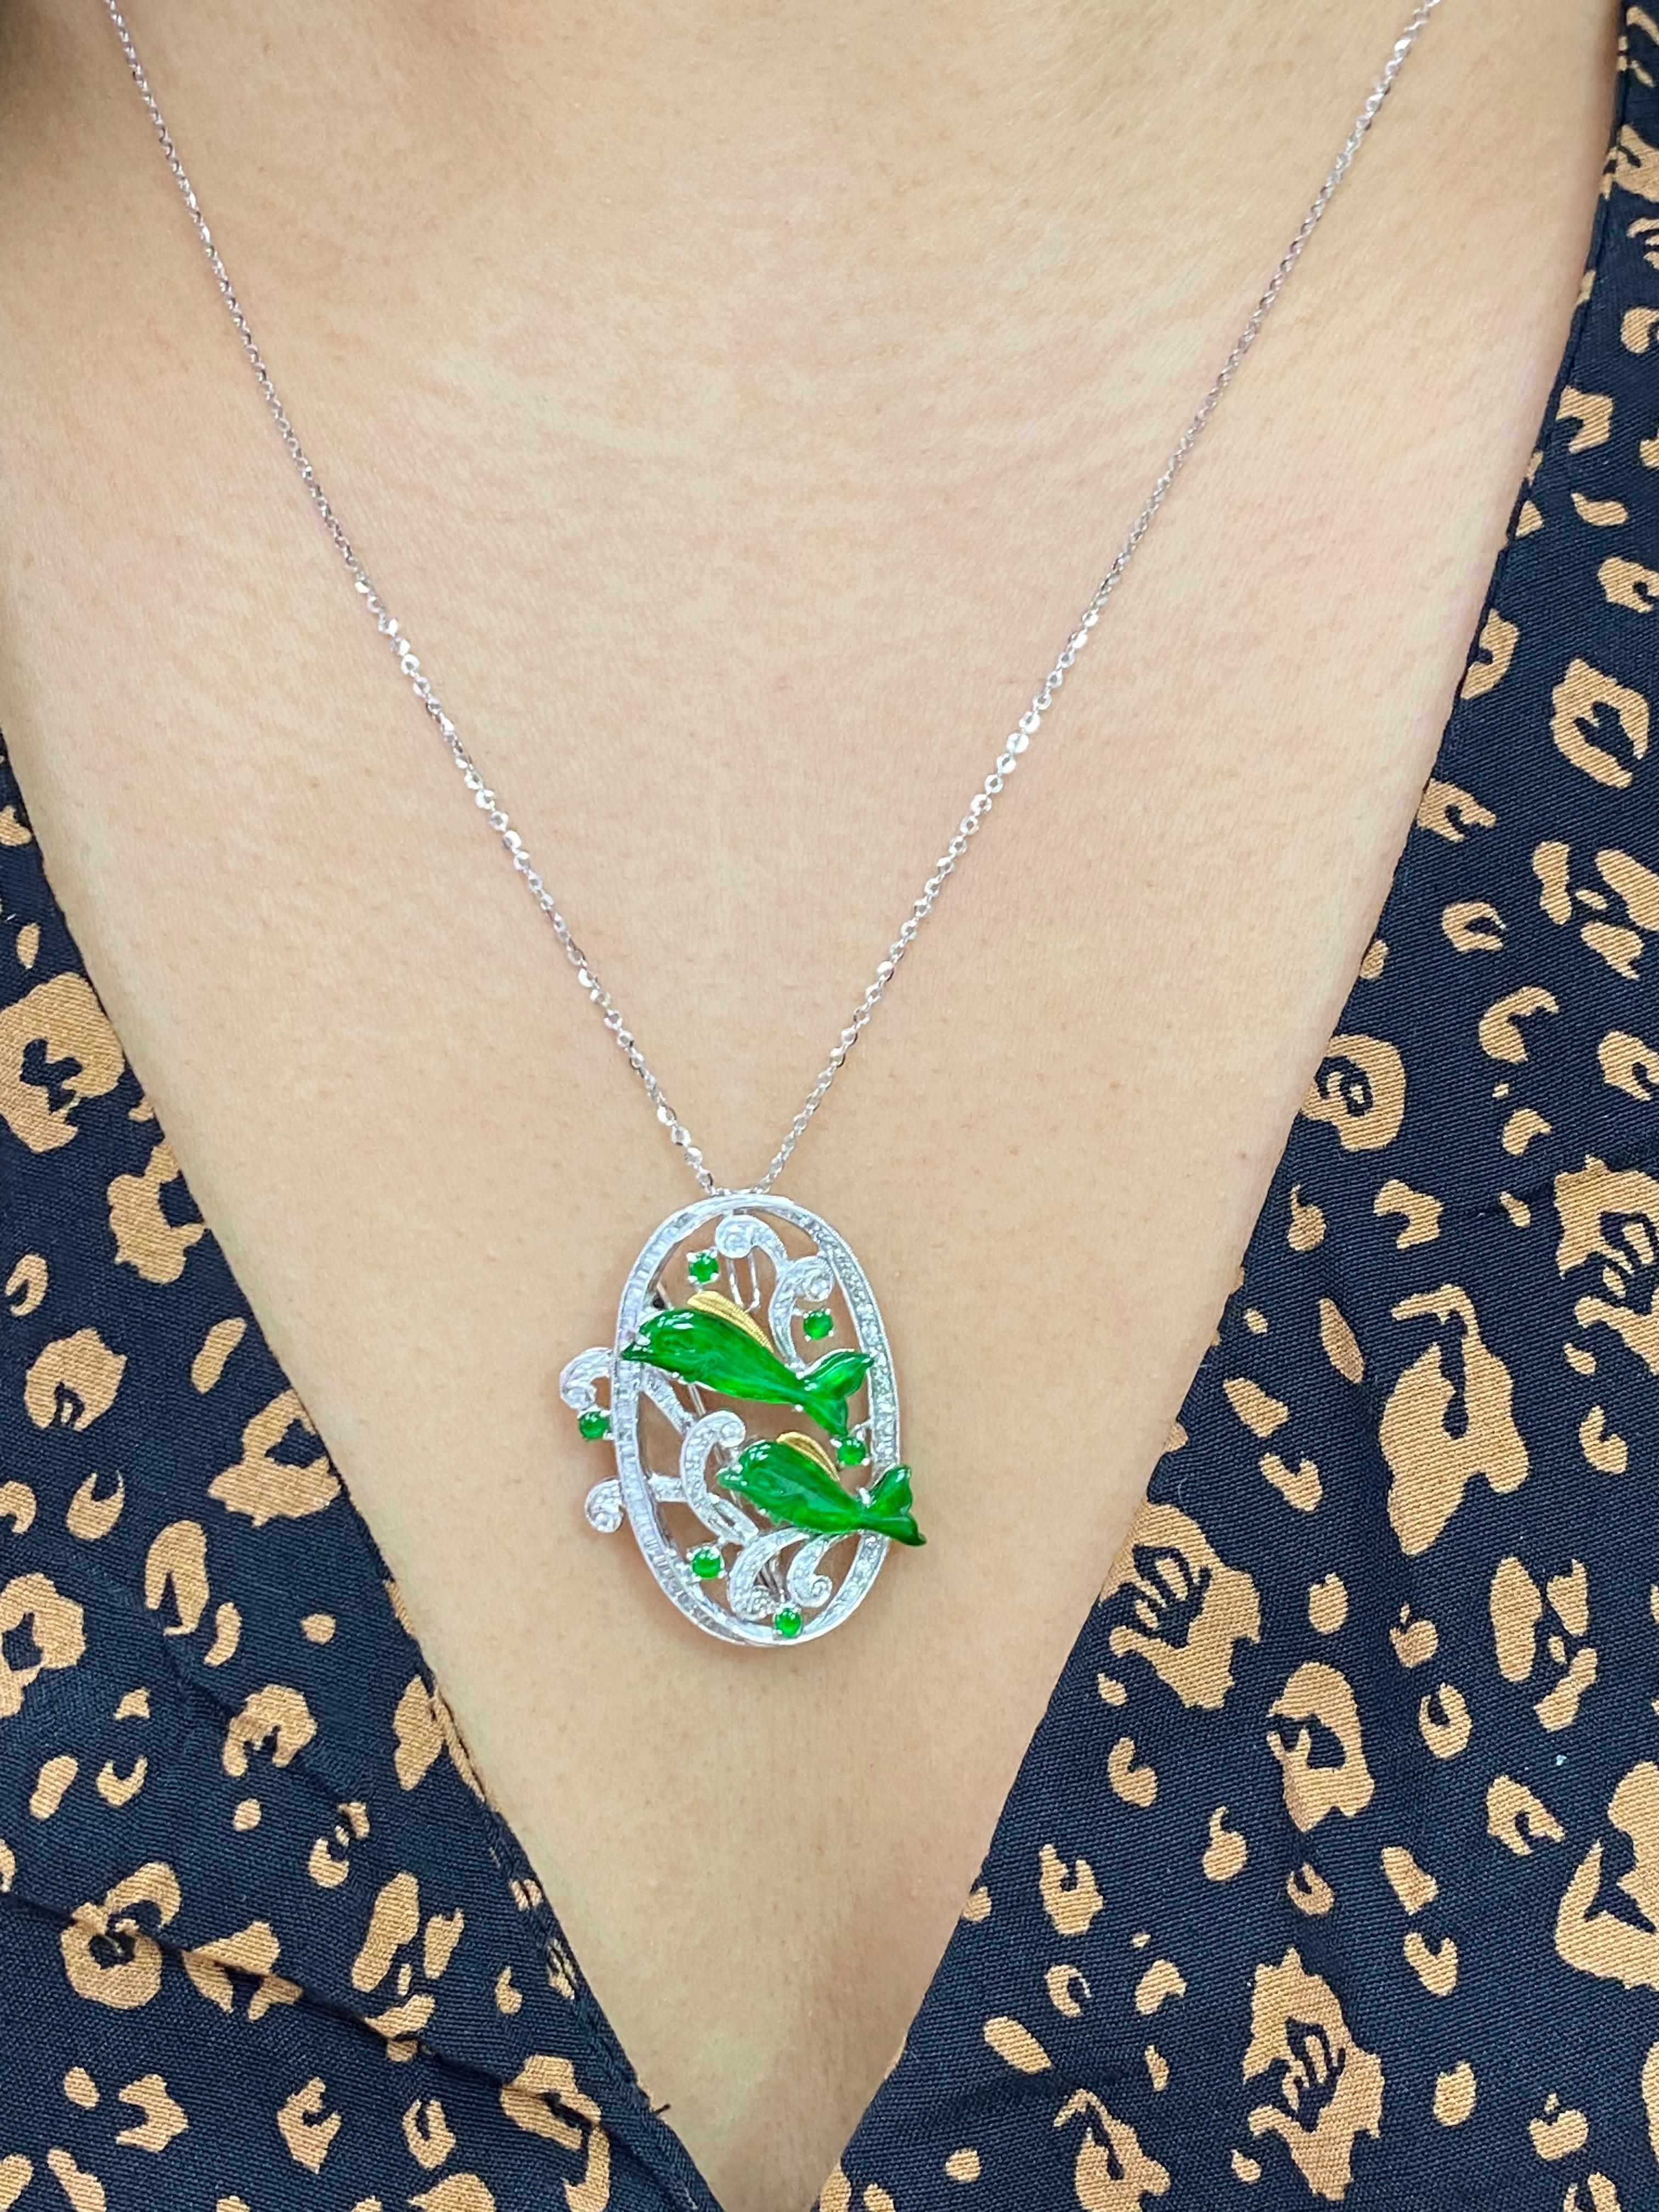 Voici un pendentif / broche en jade et diamant d'un vert pomme éclatant. Le pendentif / broche est serti d'or blanc 18k et de diamants. La Jade est certifiée. Ce dauphin en jade a une belle couleur verte vive que vous n'oublierez jamais. Il brille